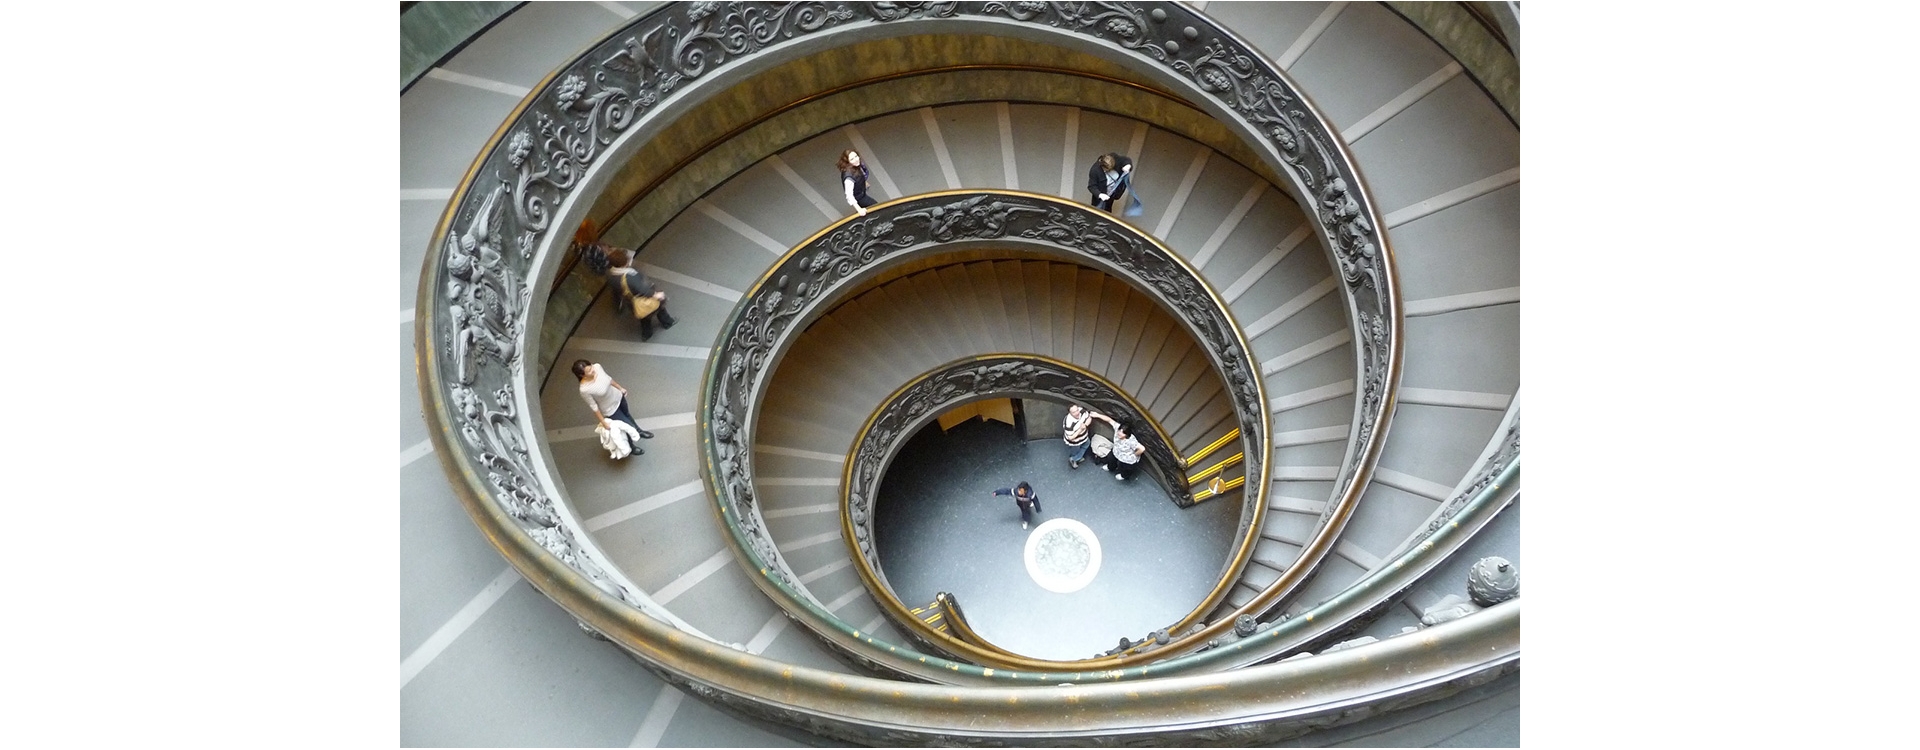 Musei Vaticani sempre aperti su Internet, visitali subito!